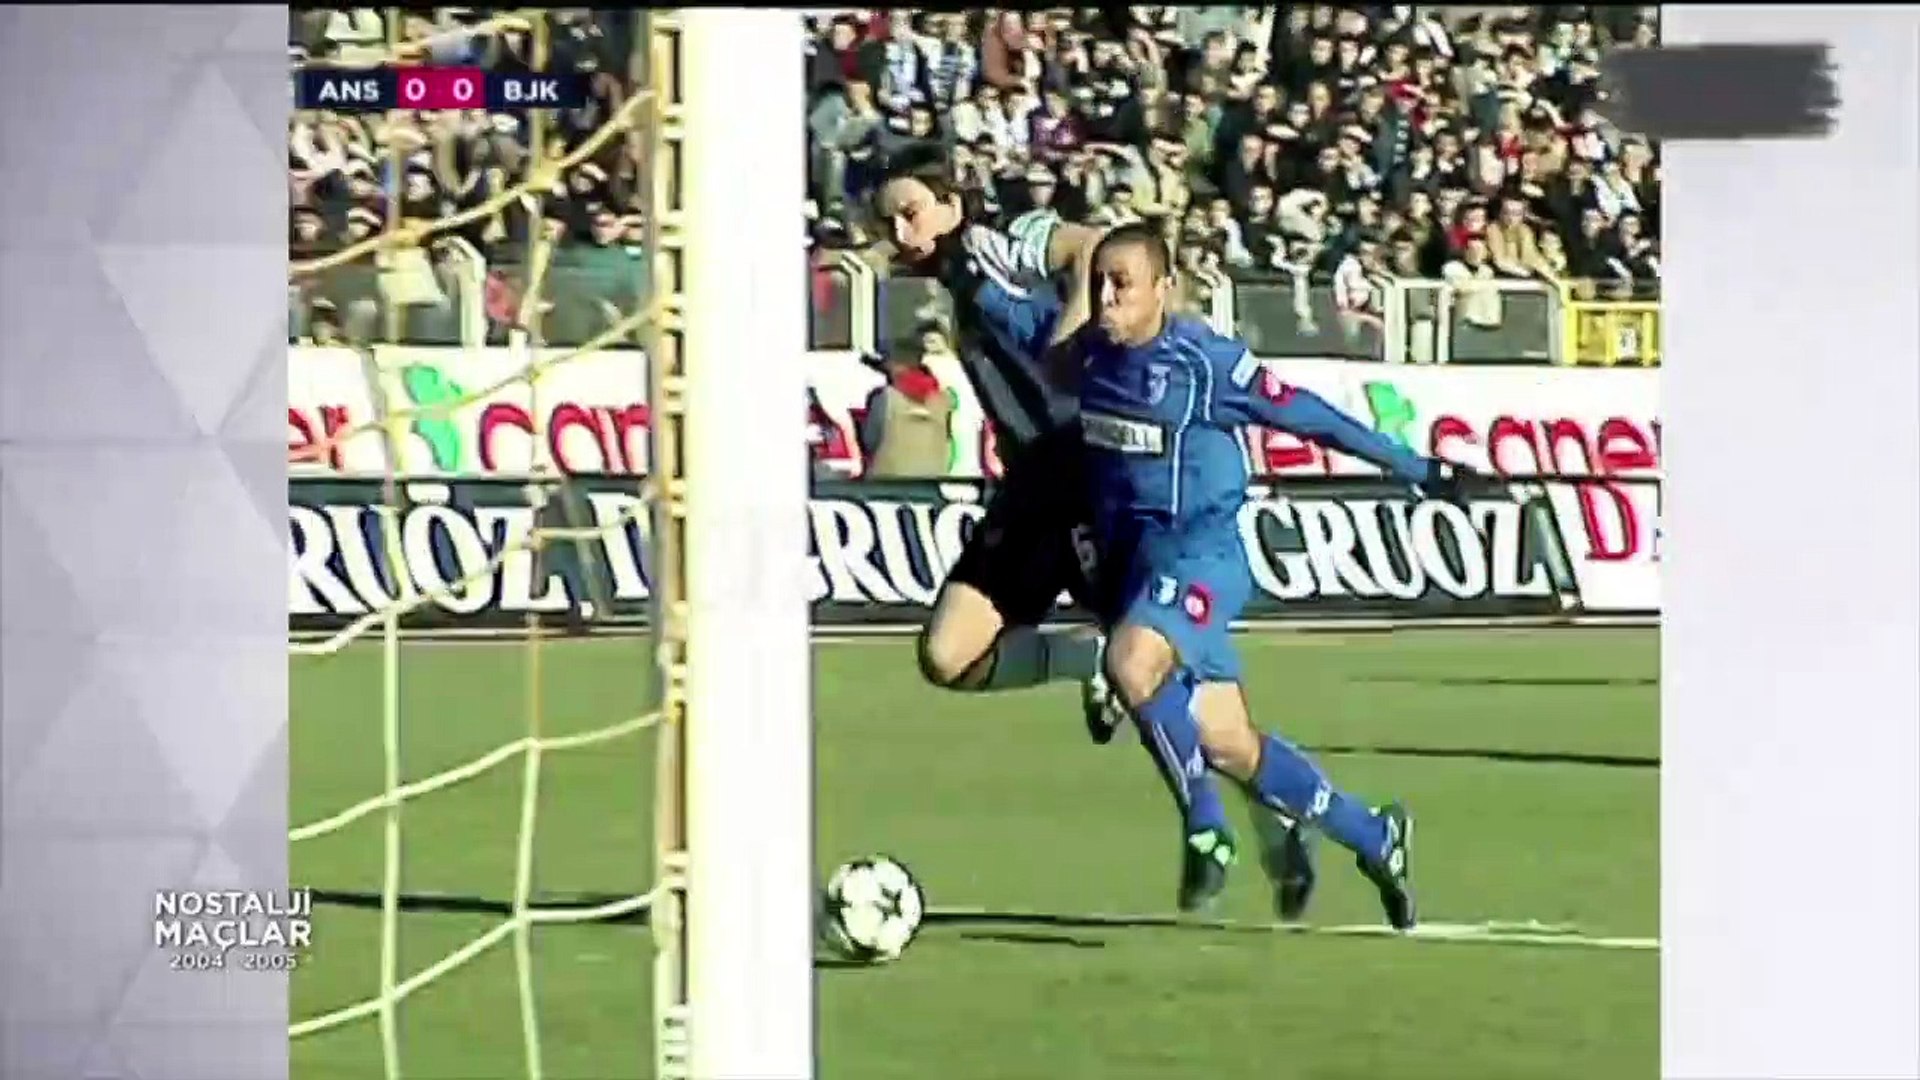 Beşiktaş JK vs. Gaziantepspor 2004-2005